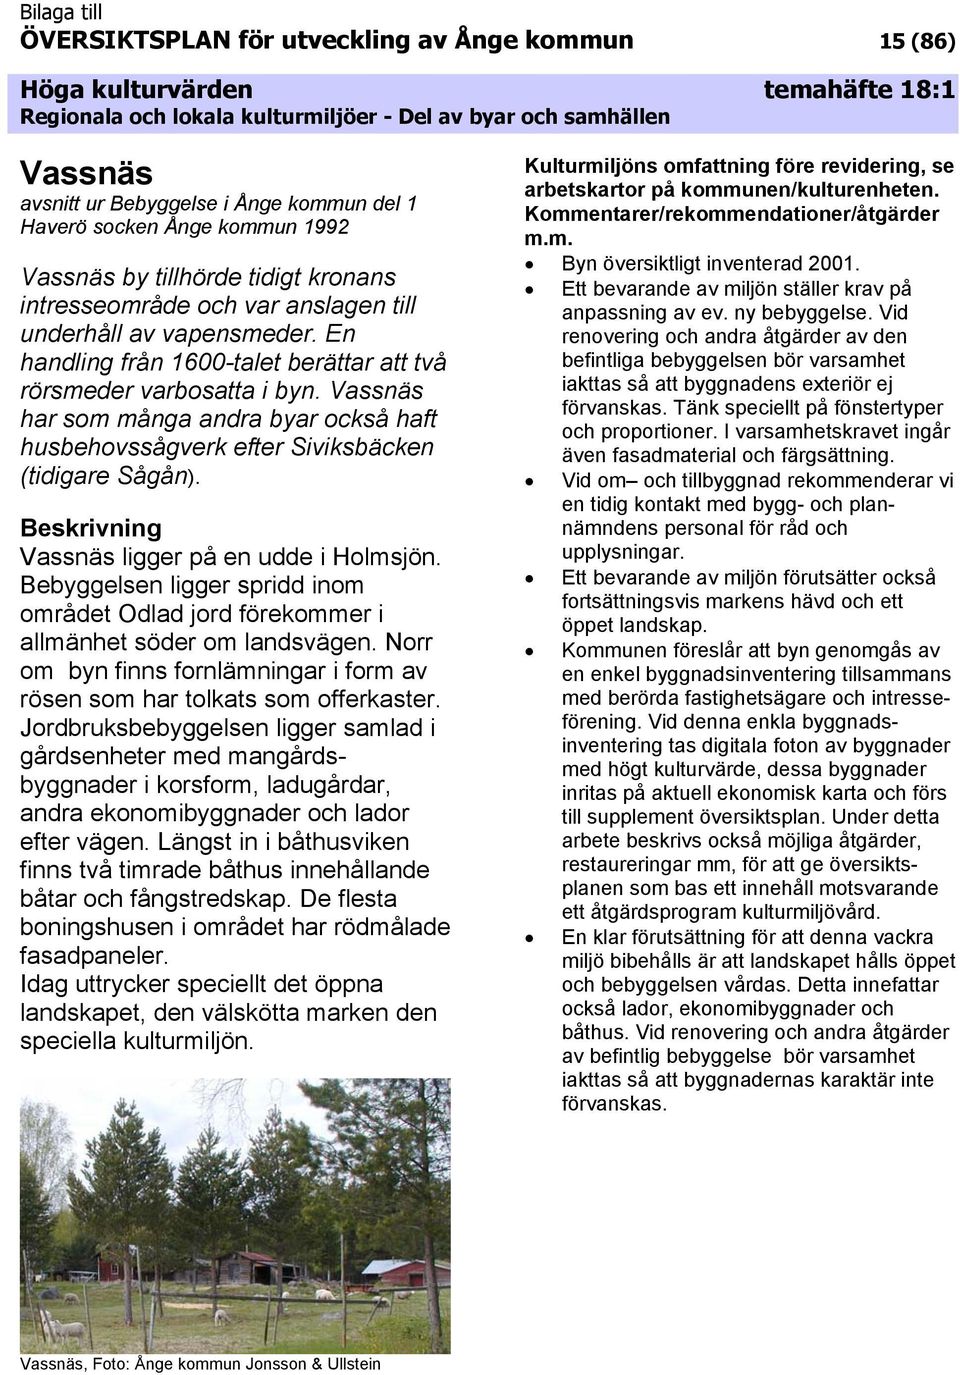 Vassnäs har som många andra byar också haft husbehovssågverk efter Siviksbäcken (tidigare Sågån). Vassnäs ligger på en udde i Holmsjön.